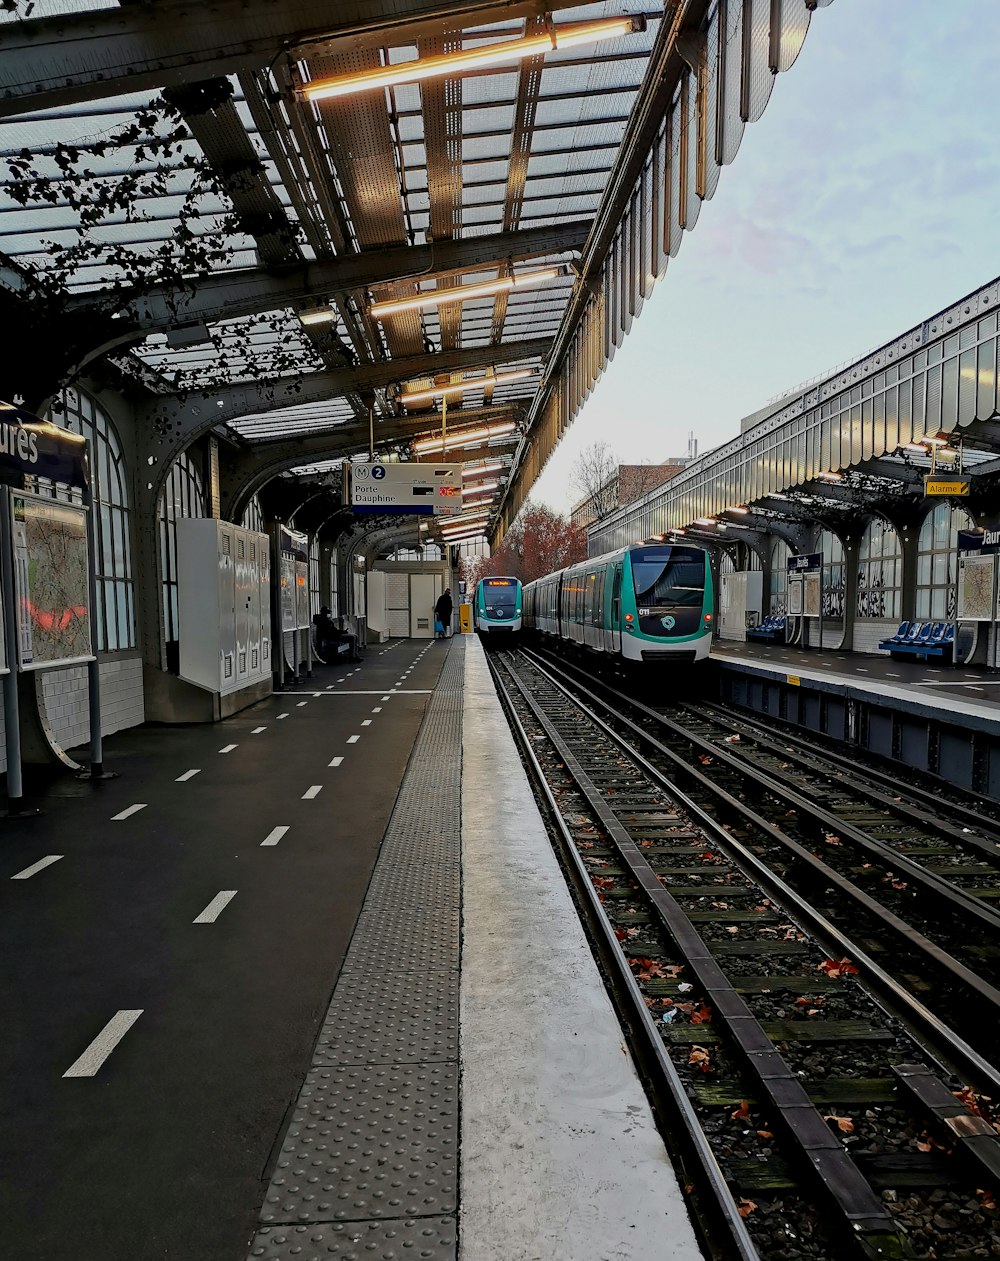 Tren azul y blanco en la estación de tren durante el día